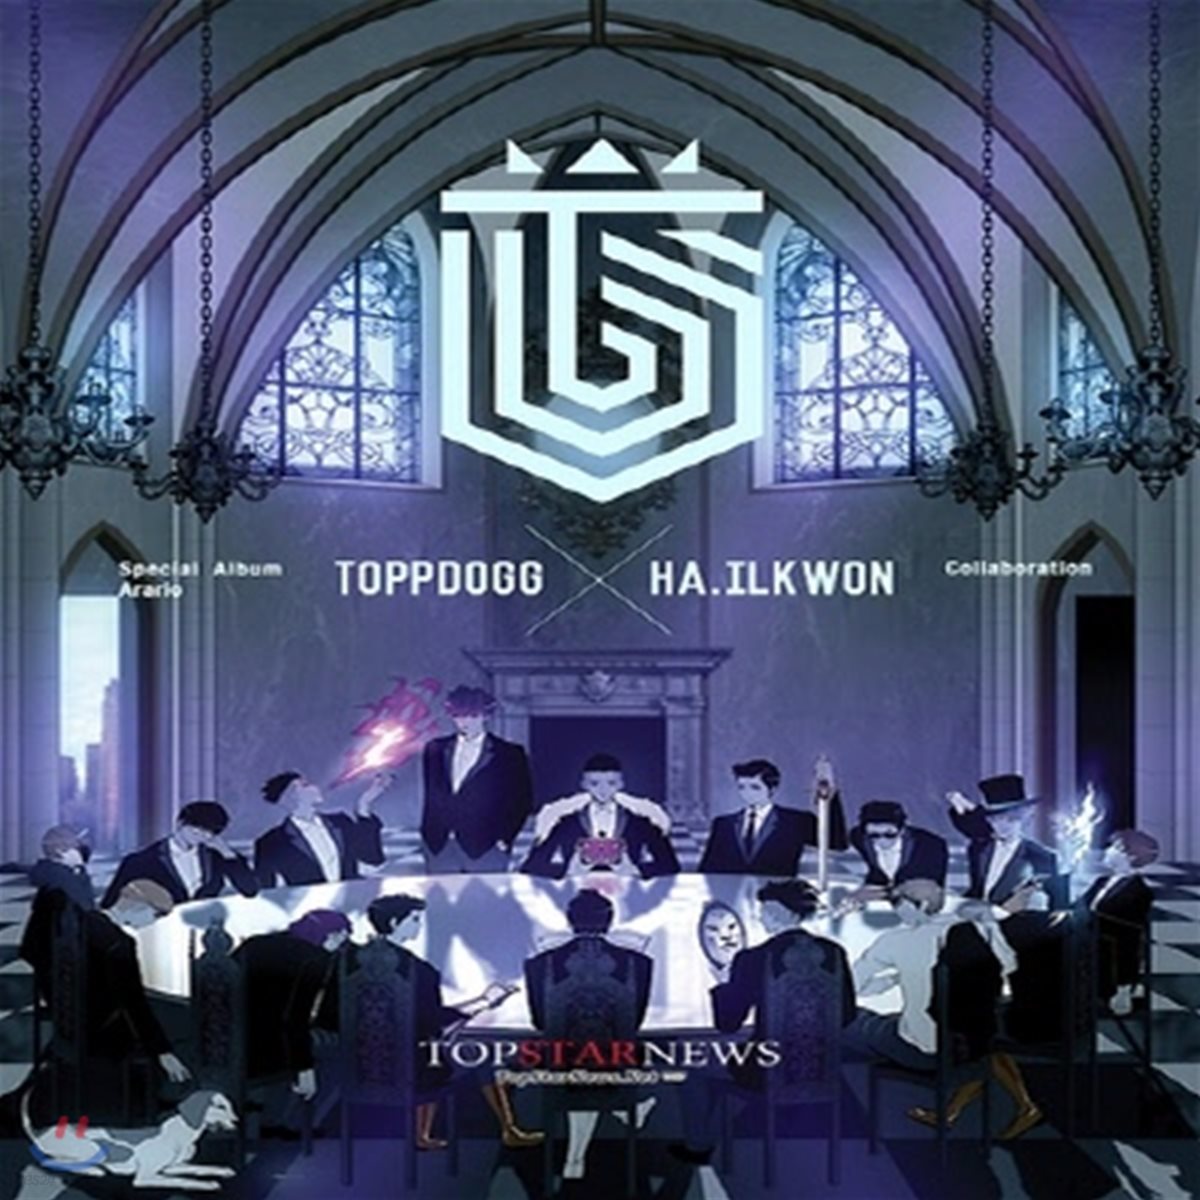 [중고] TOPPDOGG(탑독) / Arario (하일권 Special Album)